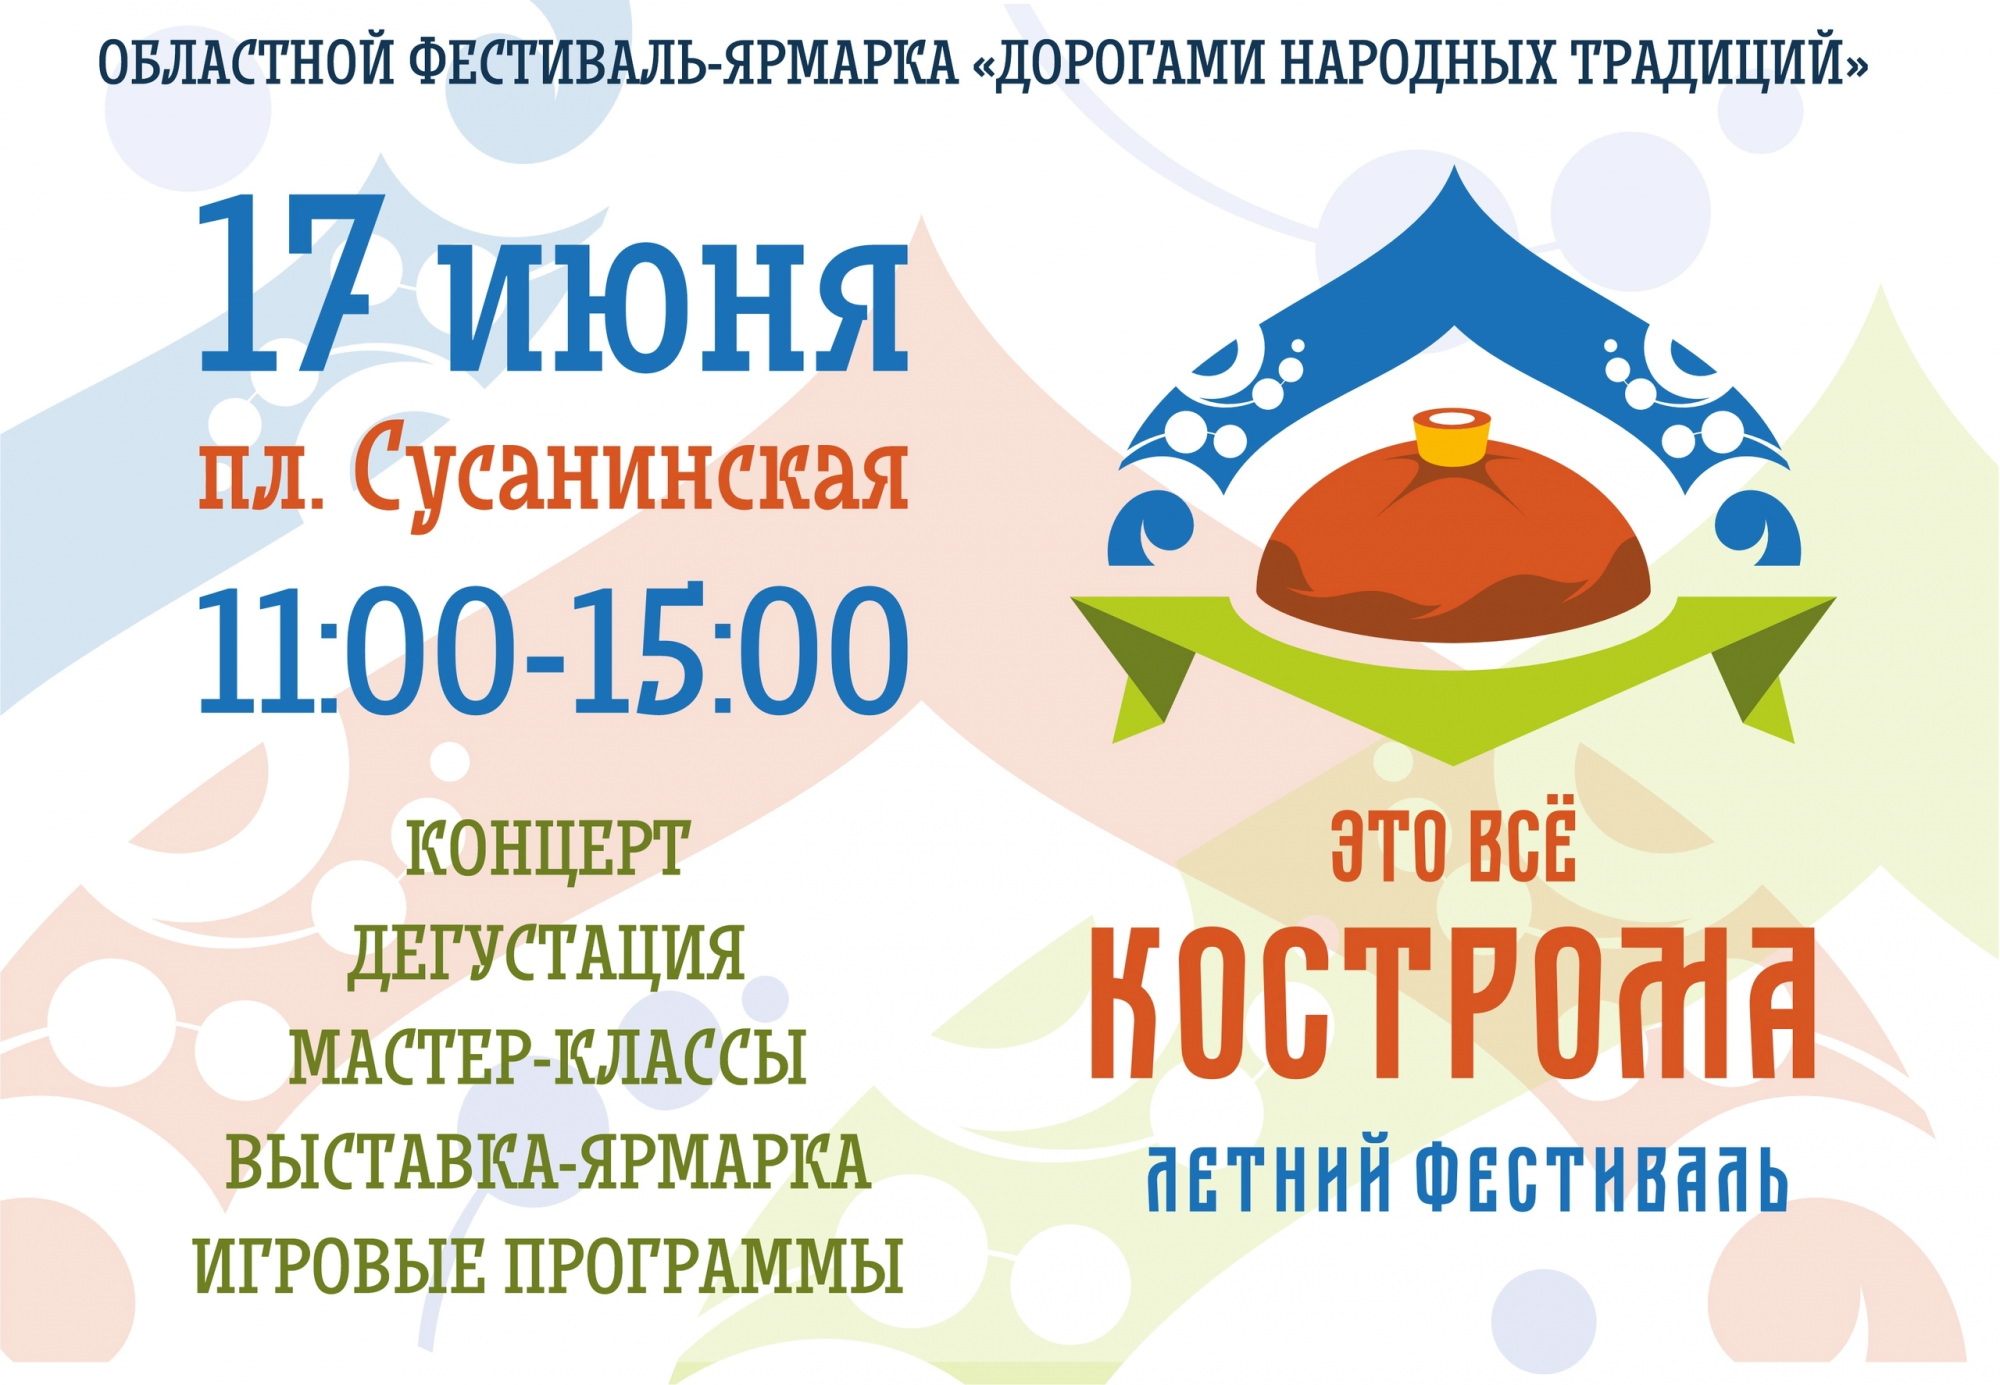 В субботу в центре города состоится праздник «Это всё Кострома»